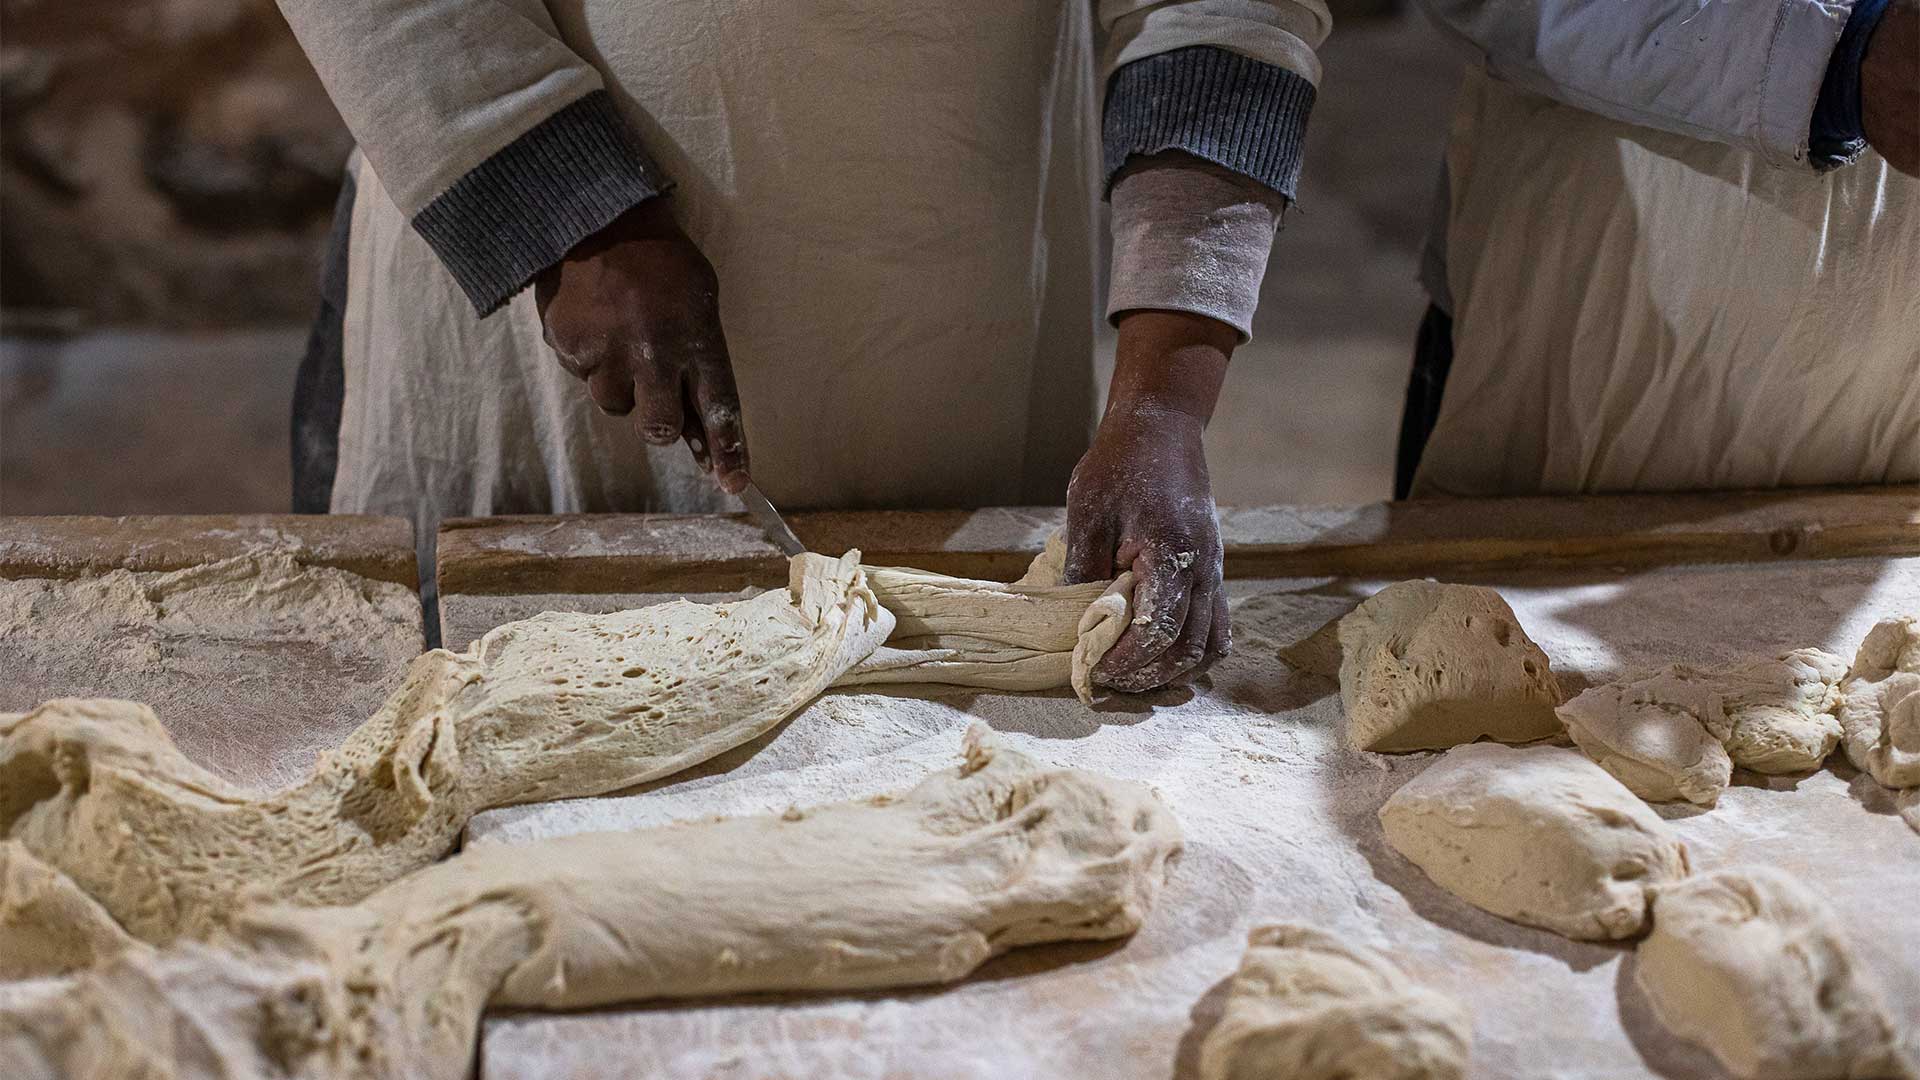 Ψωμί από τον φούρνο του 12ου αιώνα